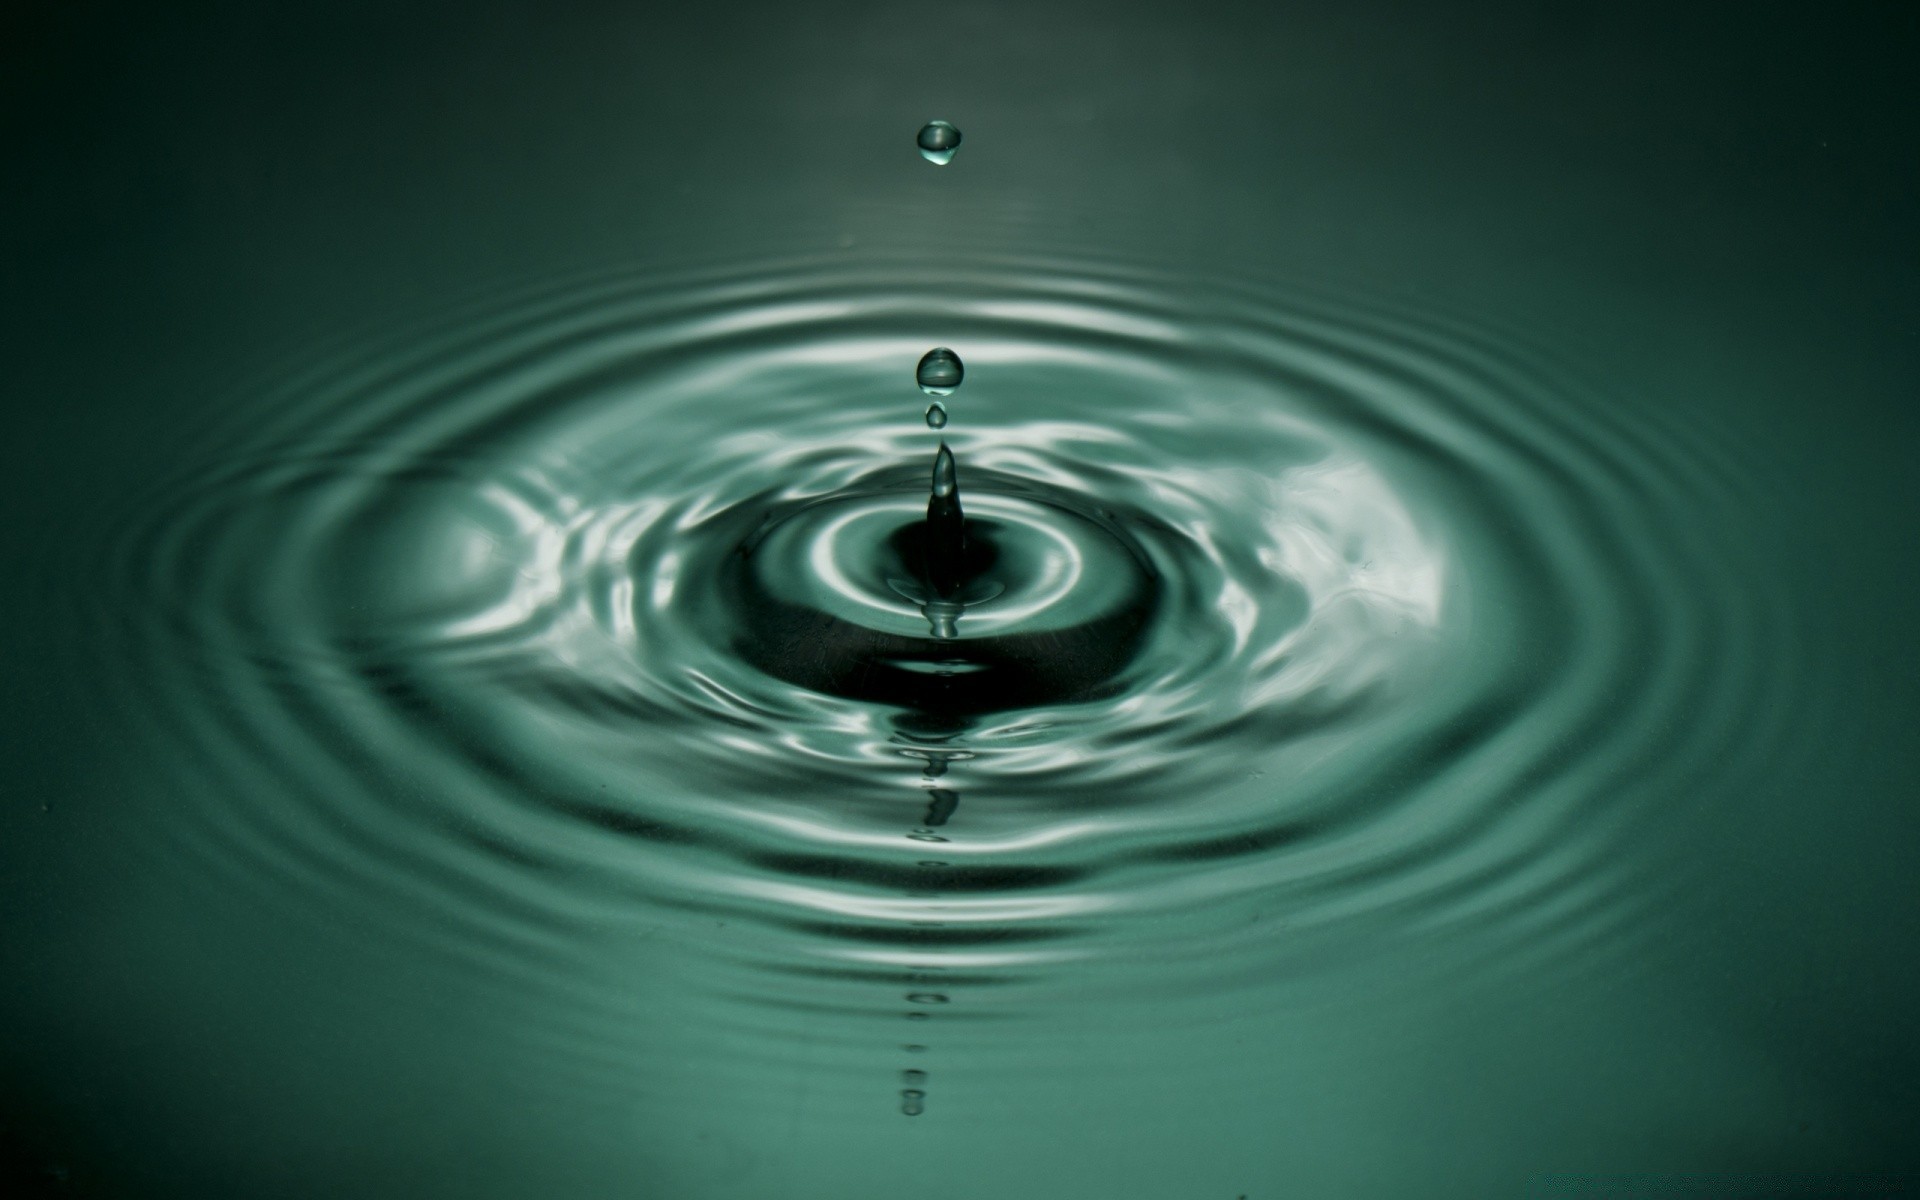 капельки и вода дождь чистота пульсация падение мокрый воды чистые движения пузырь капли всплеск водослива жидкость волна момент влияние понятно круглый отражение